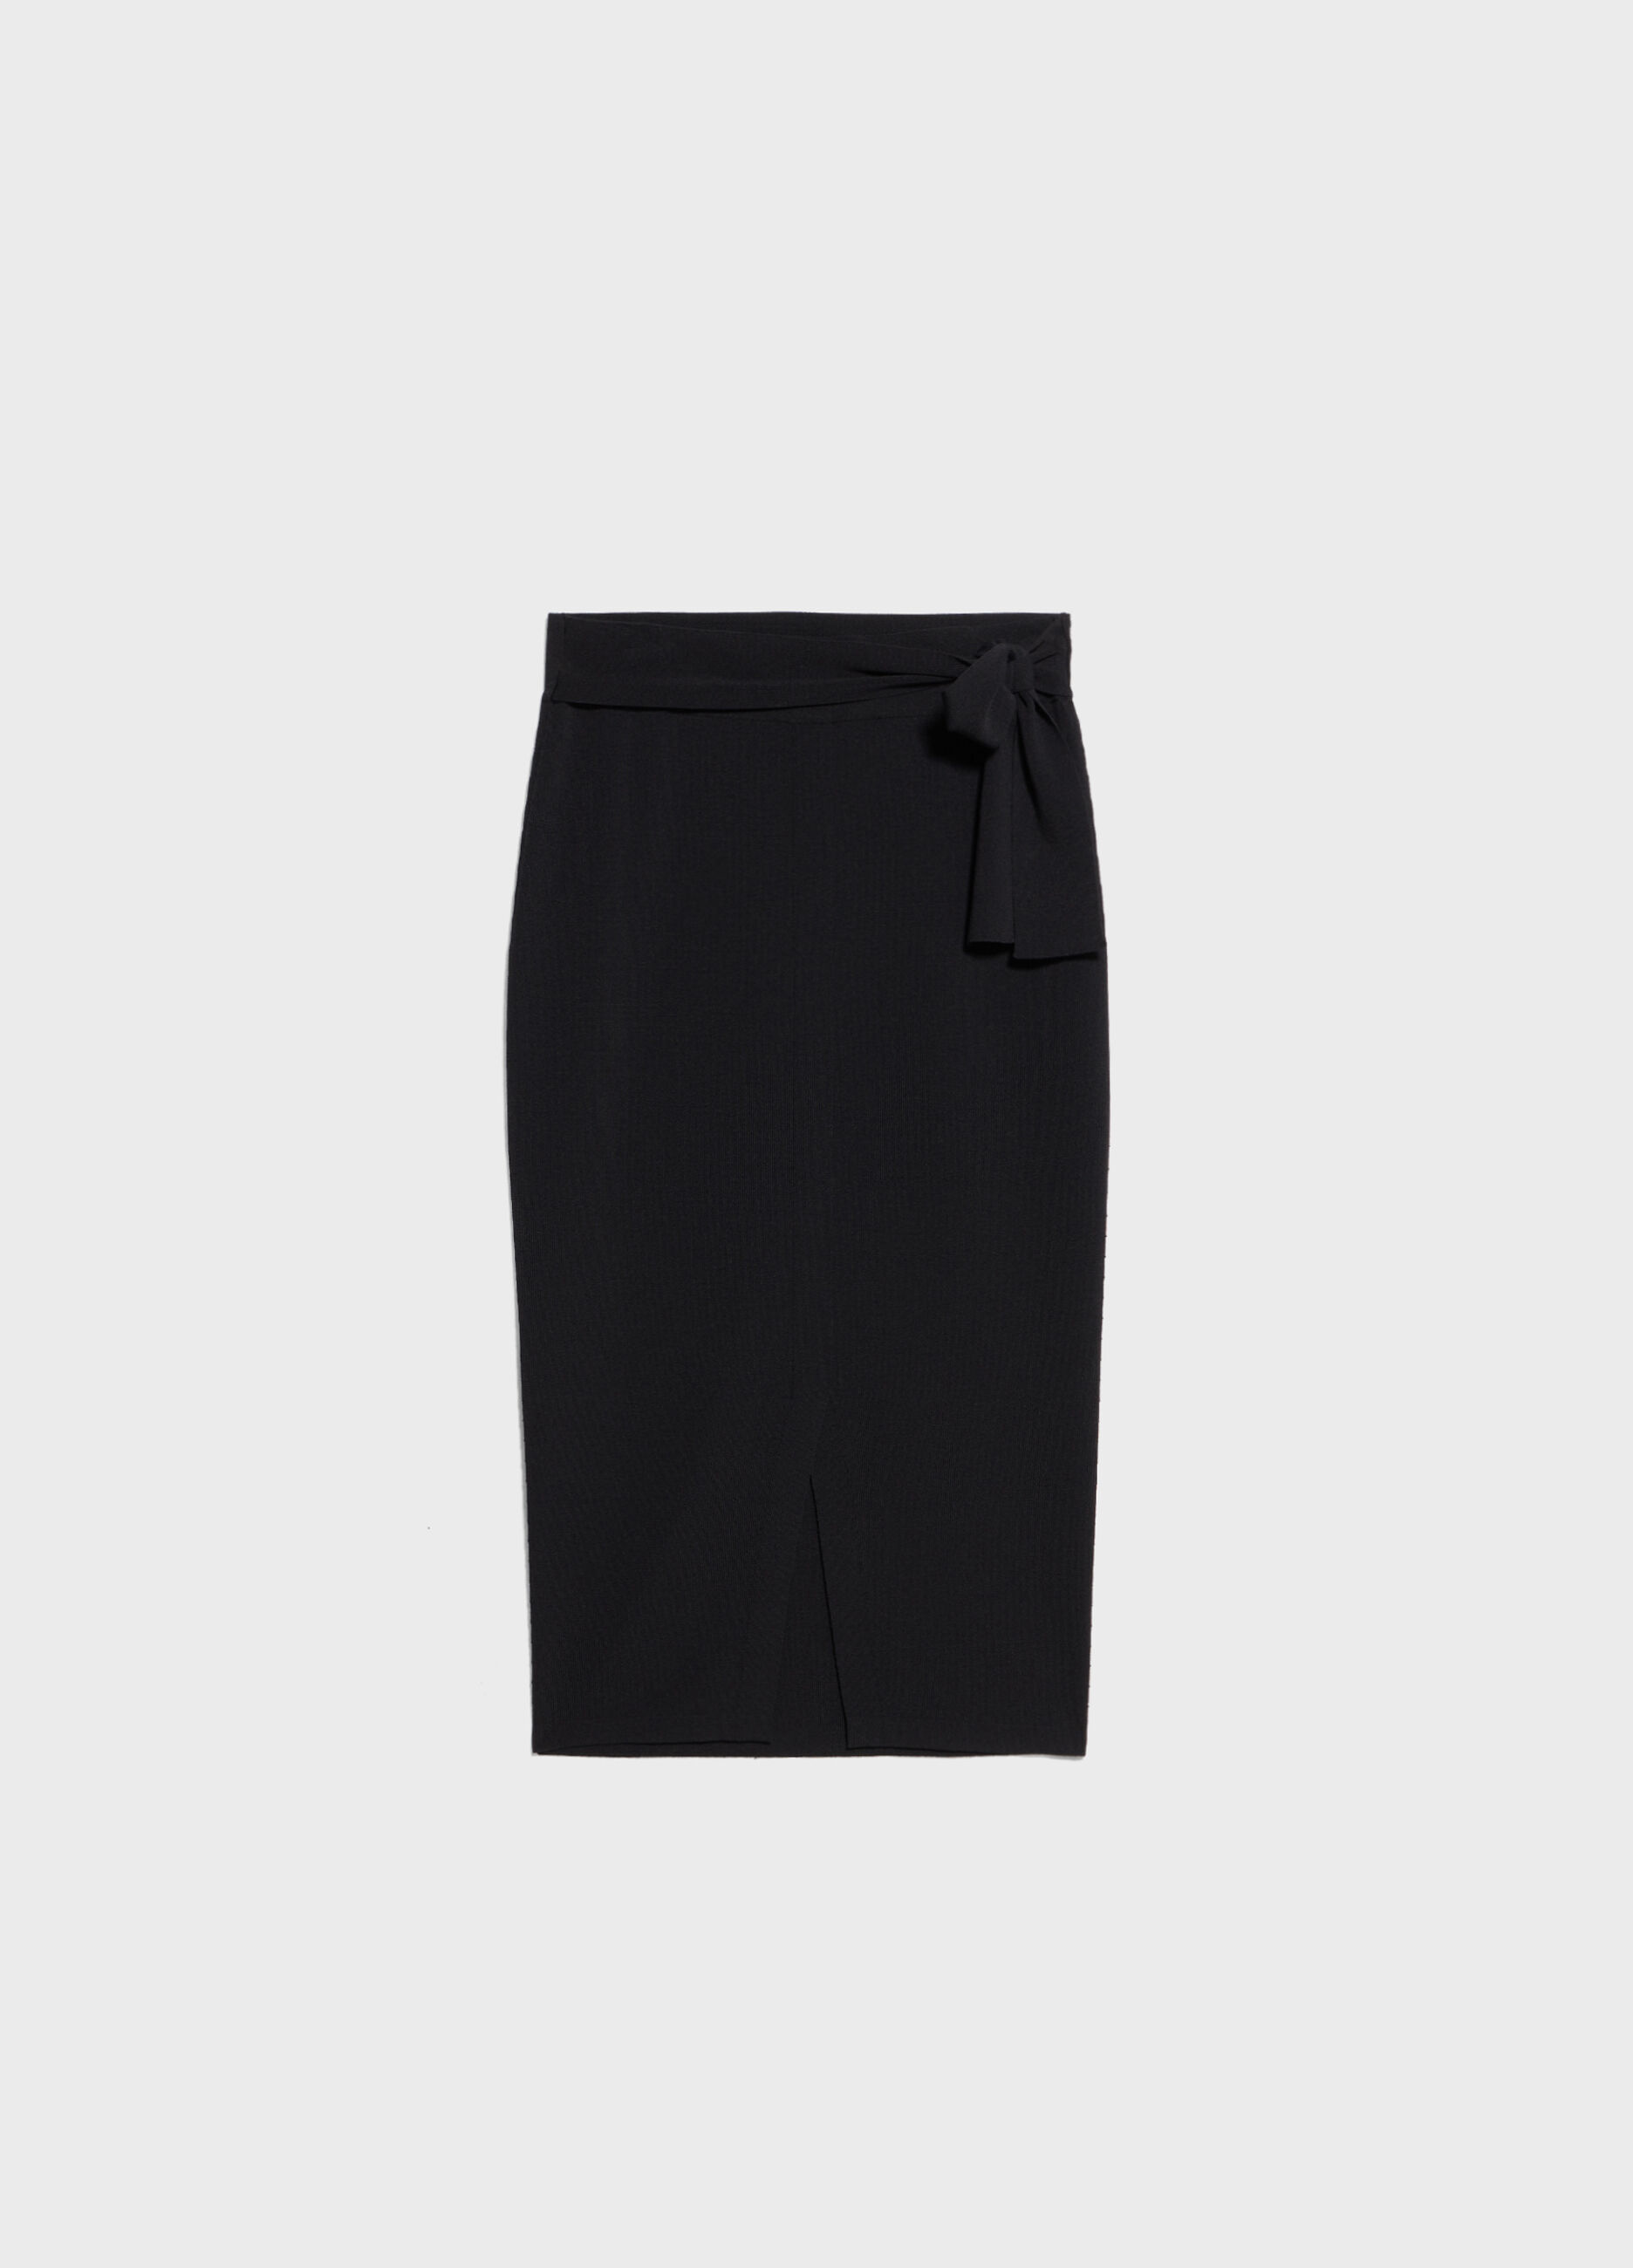 Viscose-blend pencil skirt